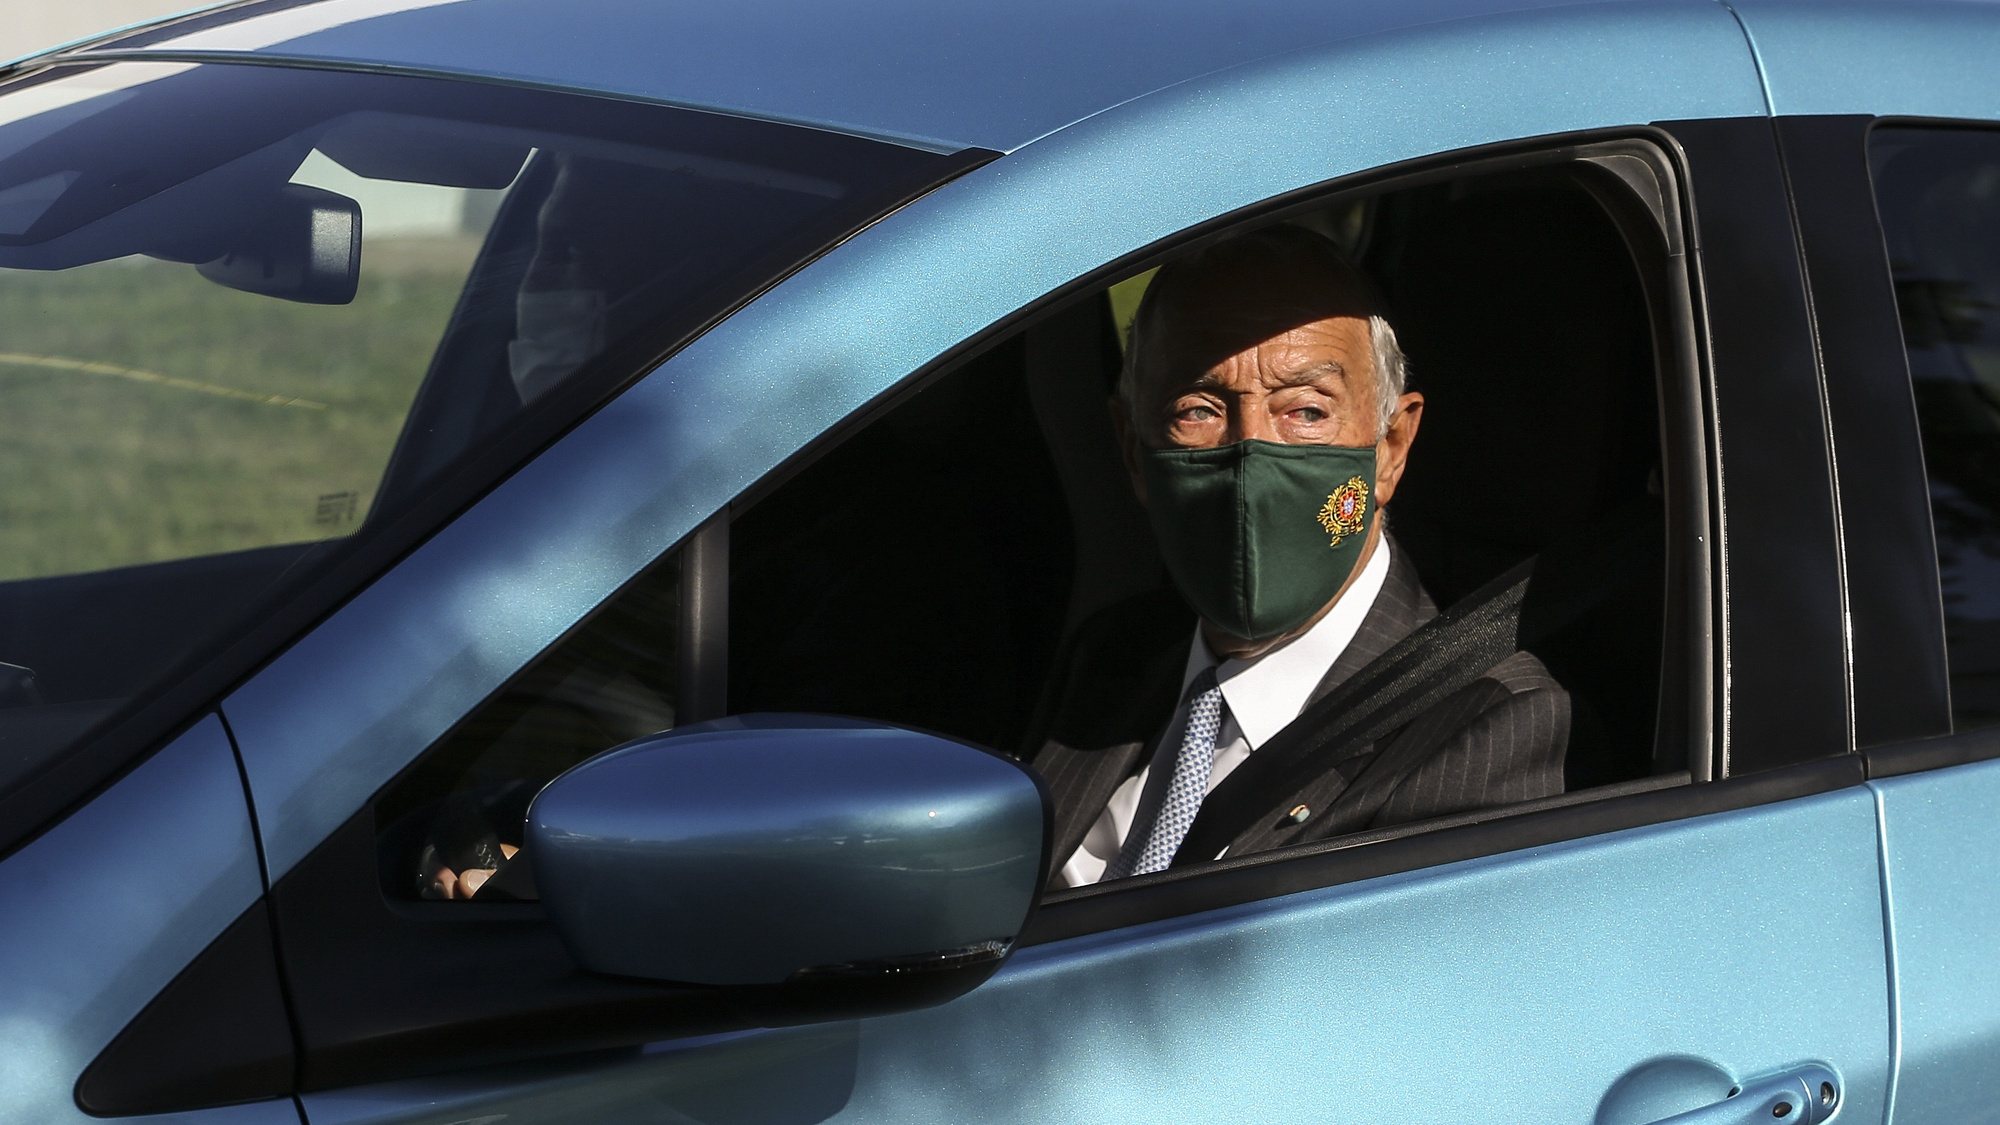 O Presidente da República, Marcelo Rebelo de Sousa, conduz um carro, durante a visita à fábrica Renault Cacia, por ocasião do 40.º aniversário, em Cacia, Aveiro, 27 de outubro de 2021. JOSÉ COELHO/LUSA